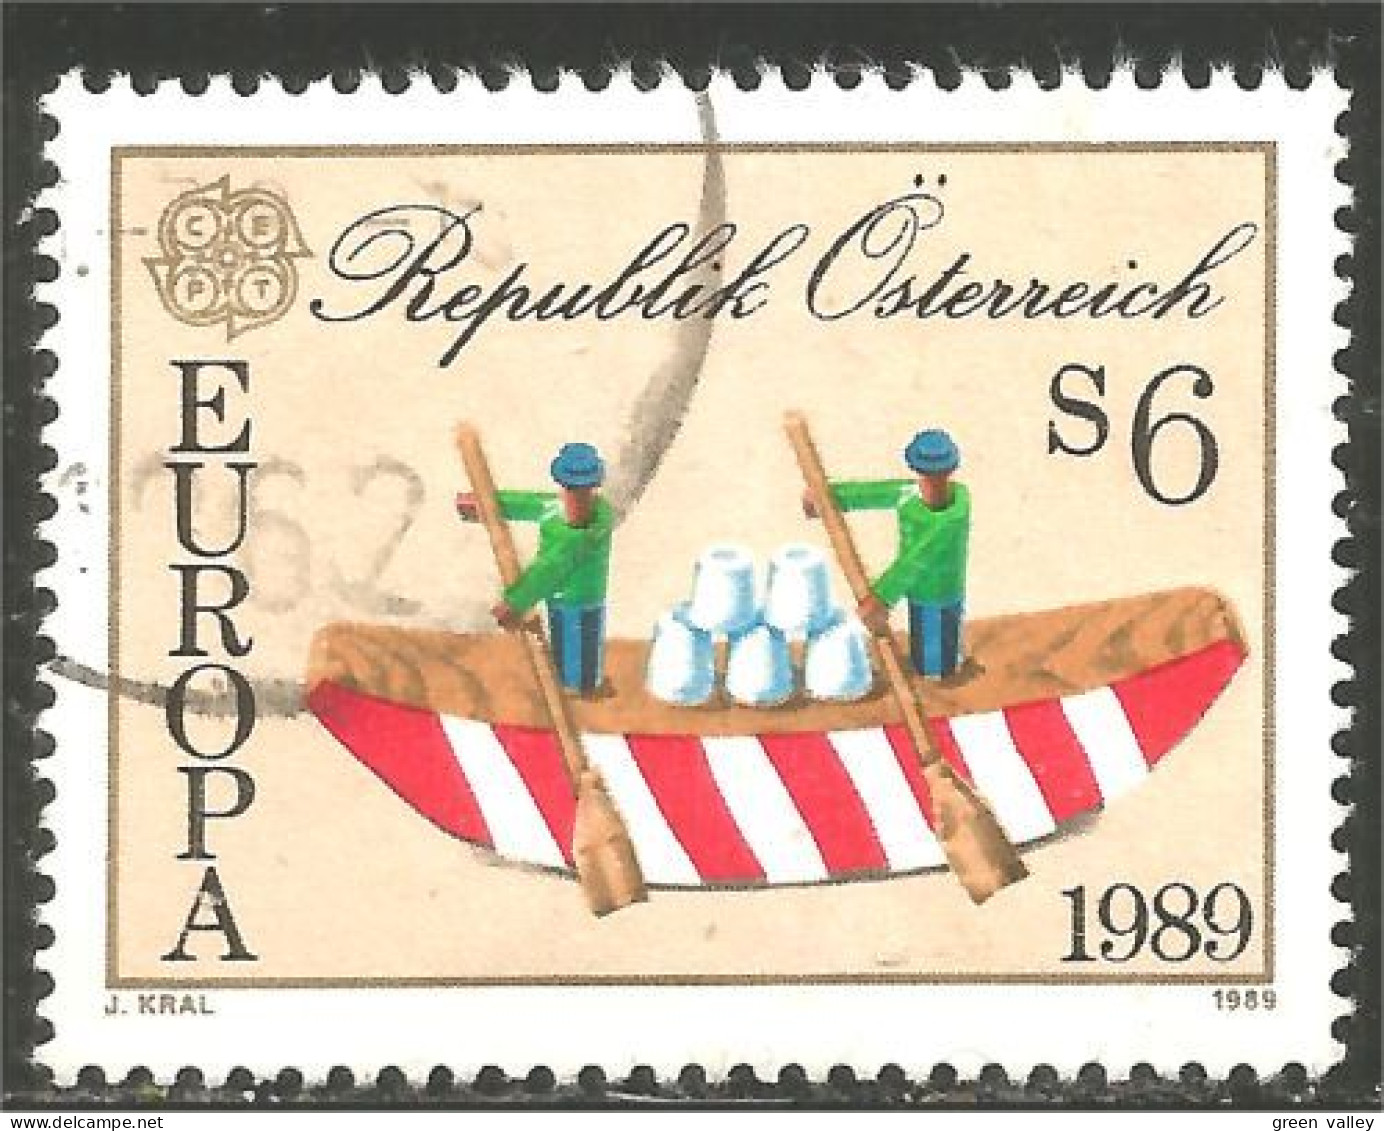 EU89-14c EUROPA-CEPT 1989 Austria Boat Bateau Jeux Enfants Children Games Kinderspiele - Barcos